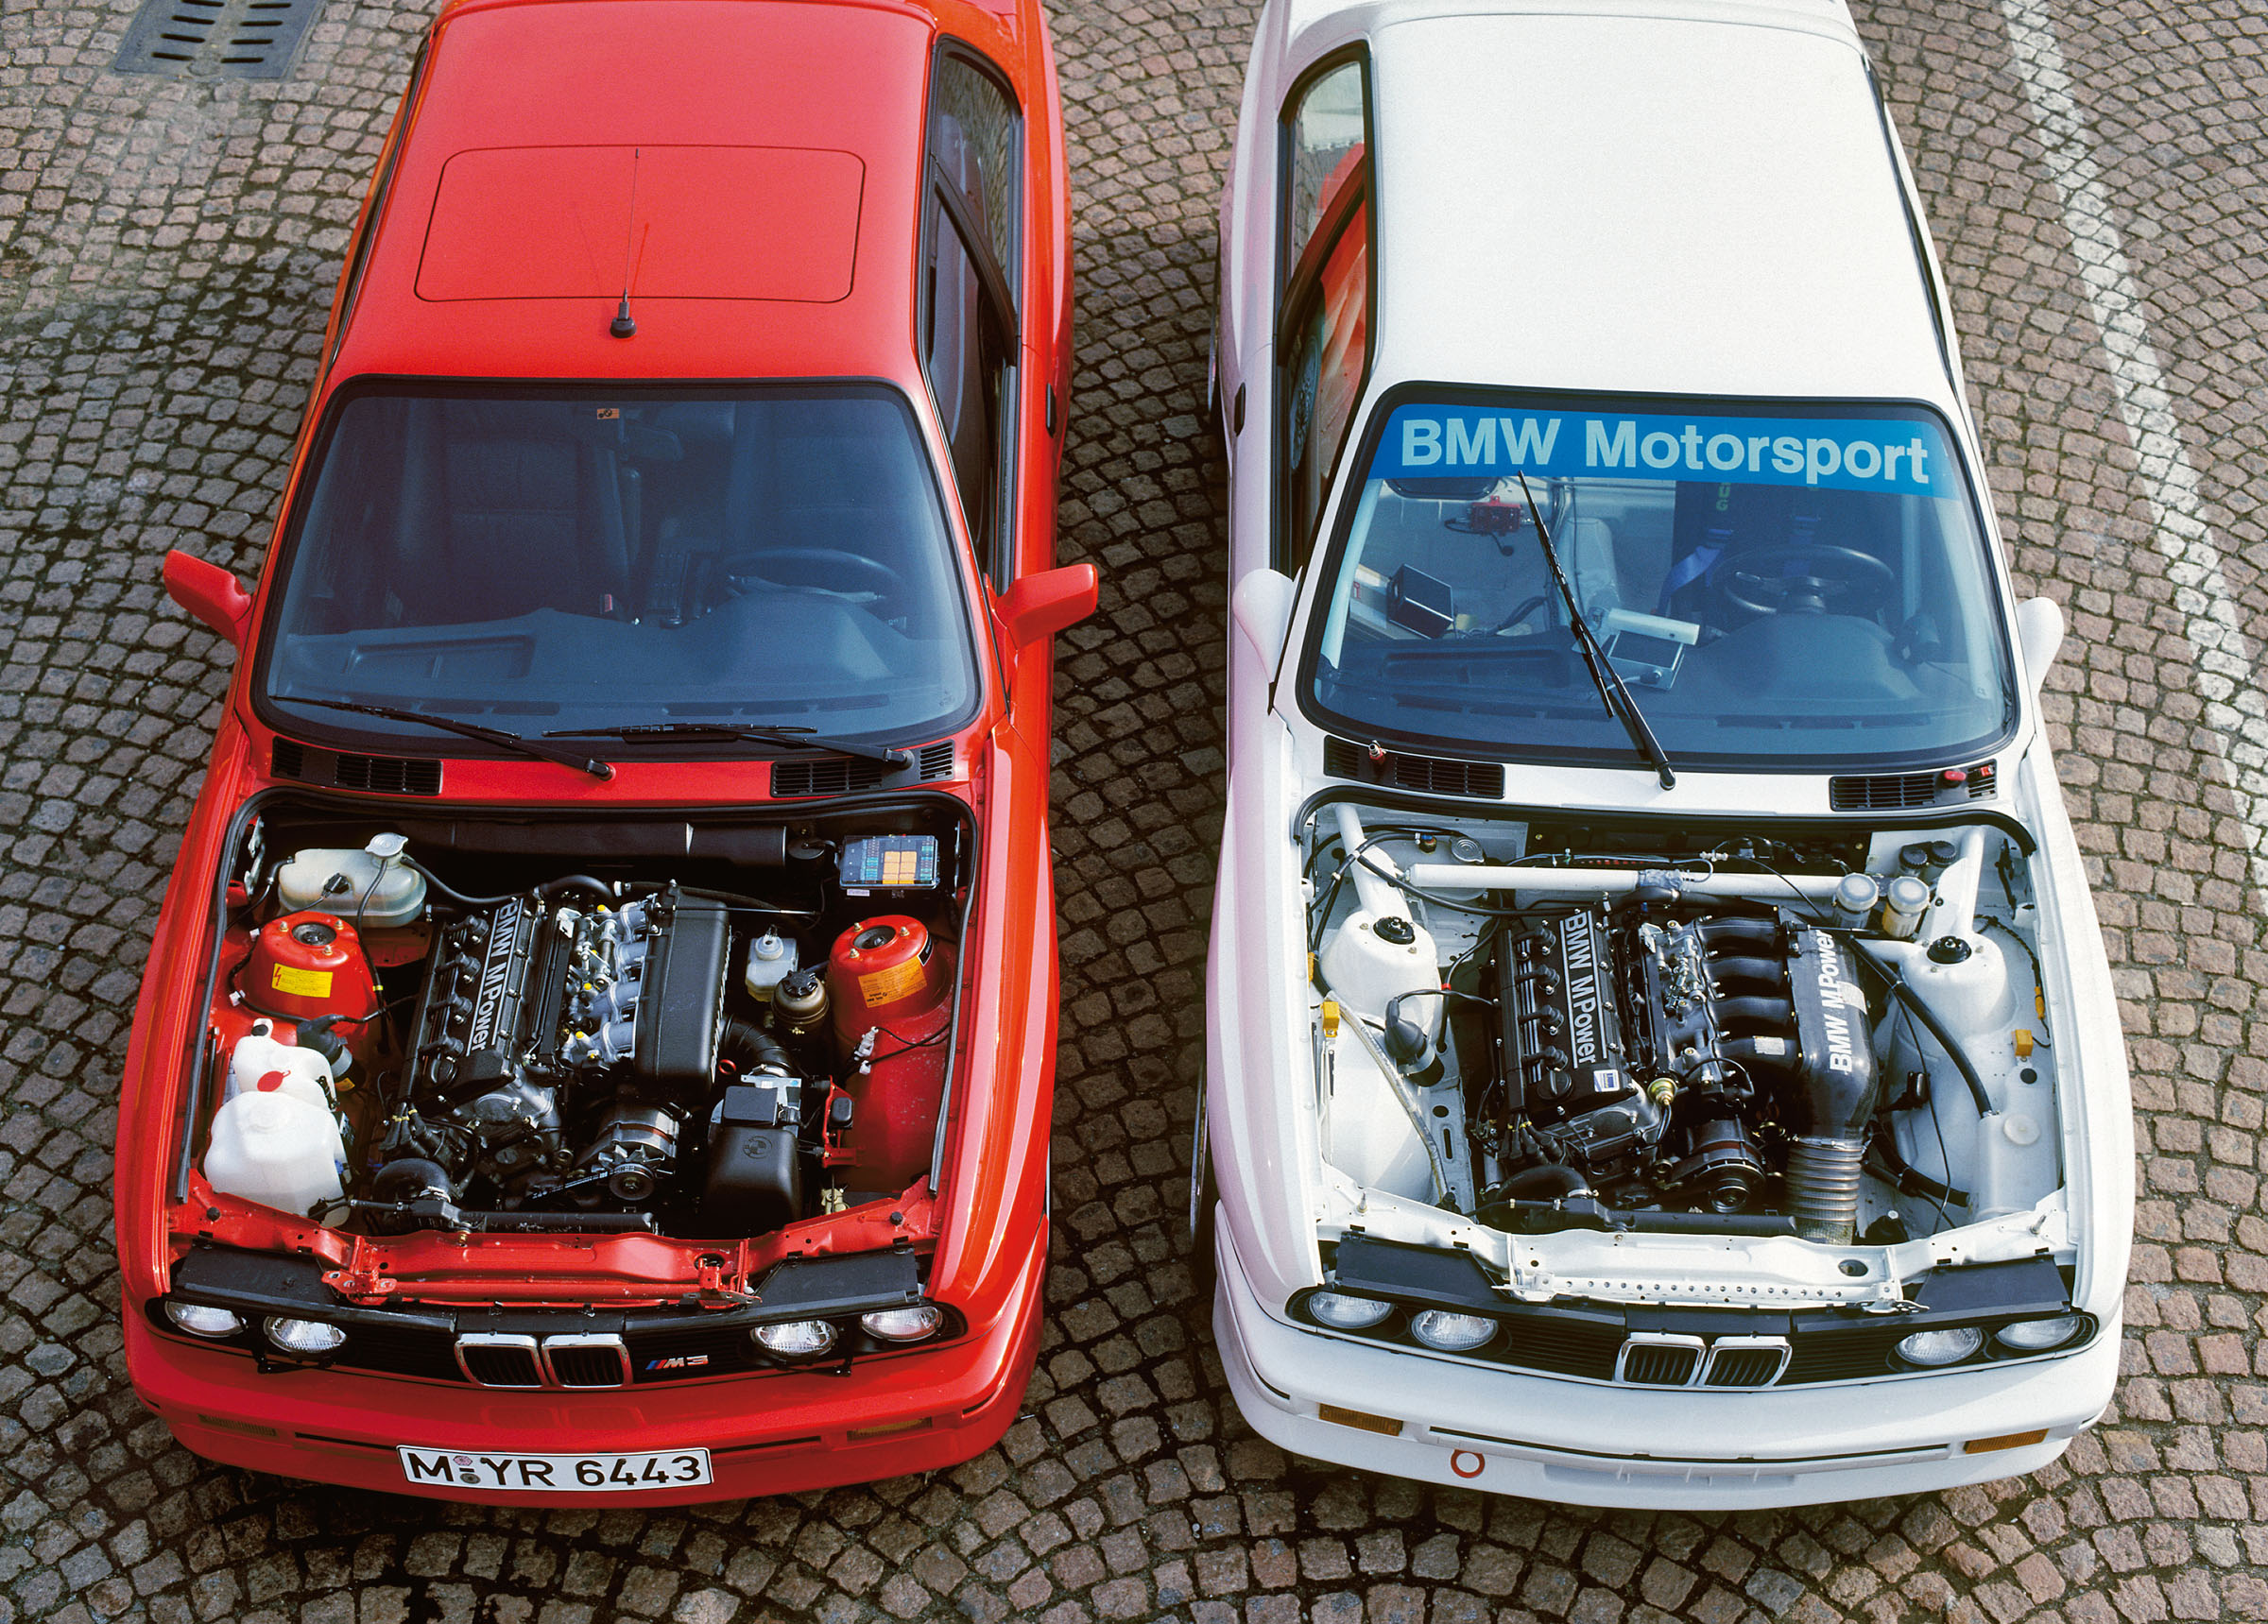 El BMW M3 E46 sigue siendo un clásico muy preciado, como muestra esta  unidad de récord